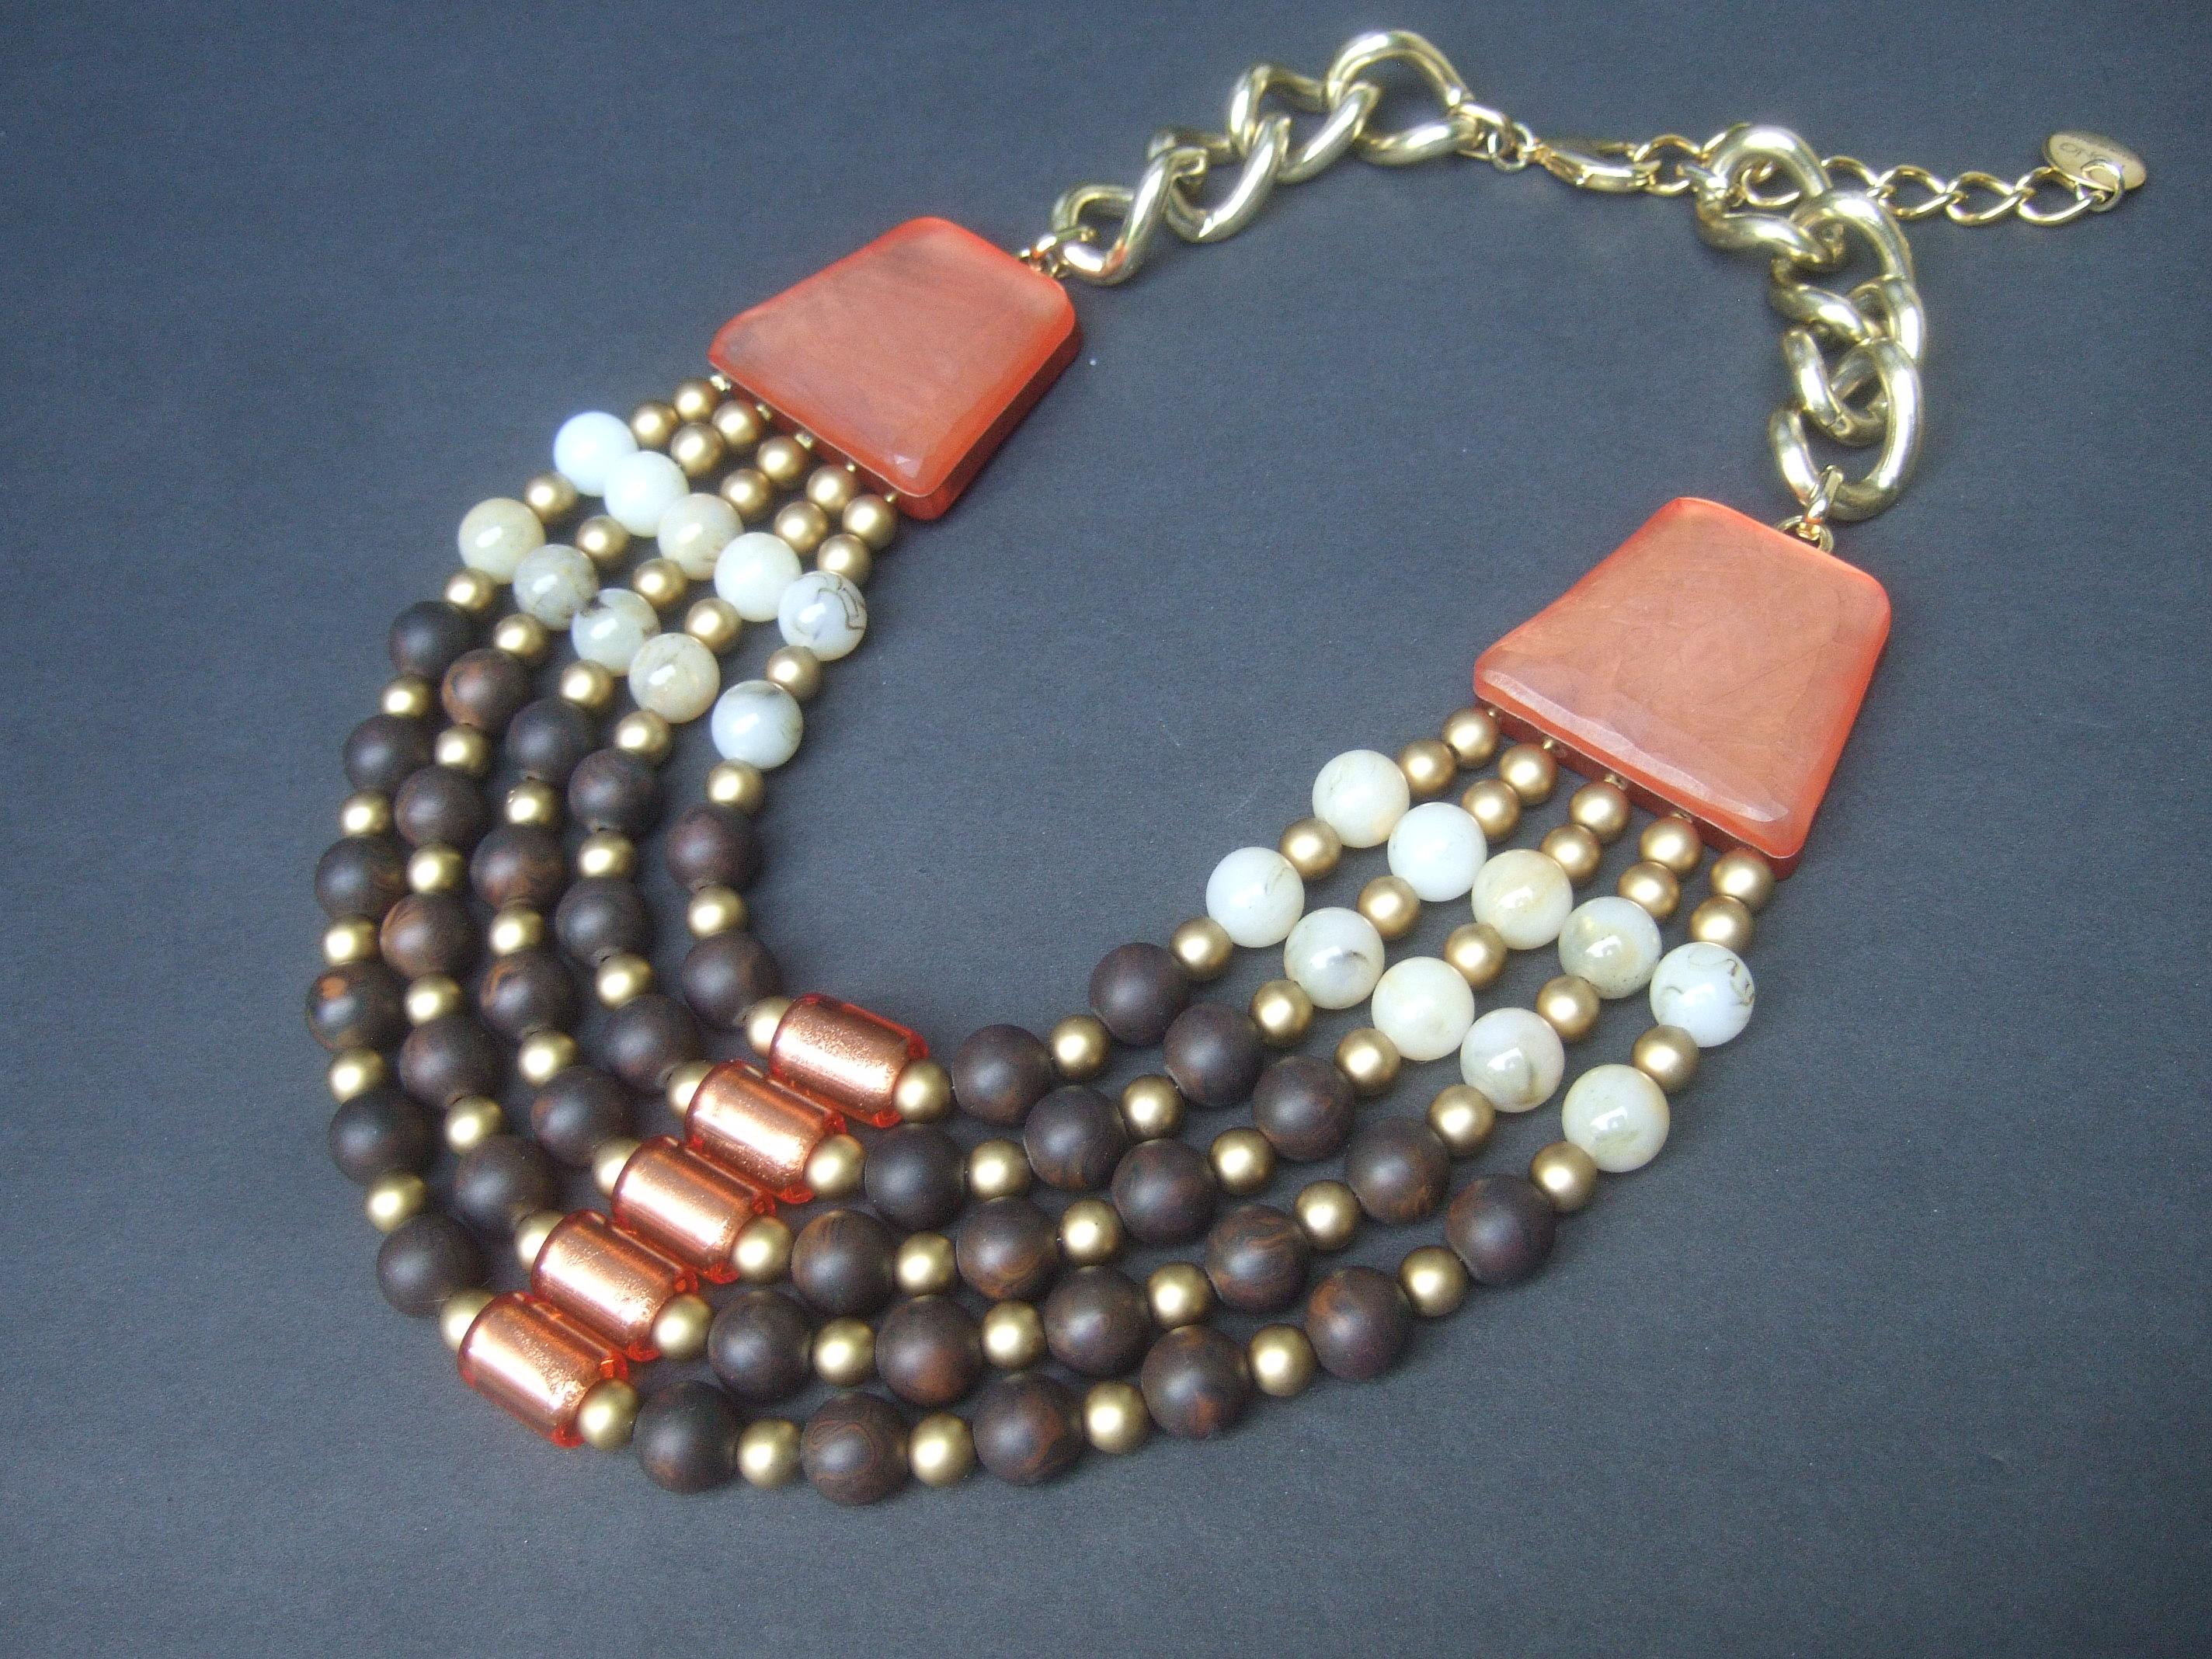 Italienische Perlenhalskette mit Latz, entworfen von Pono  ca. 1980er Jahre

Die einzigartige, großformatige Latzkette besteht aus fünf Strängen von Harzperlen in verschiedenen Größen und Farben, die von Dunkelbraun über Mattgold und Milchbeige bis